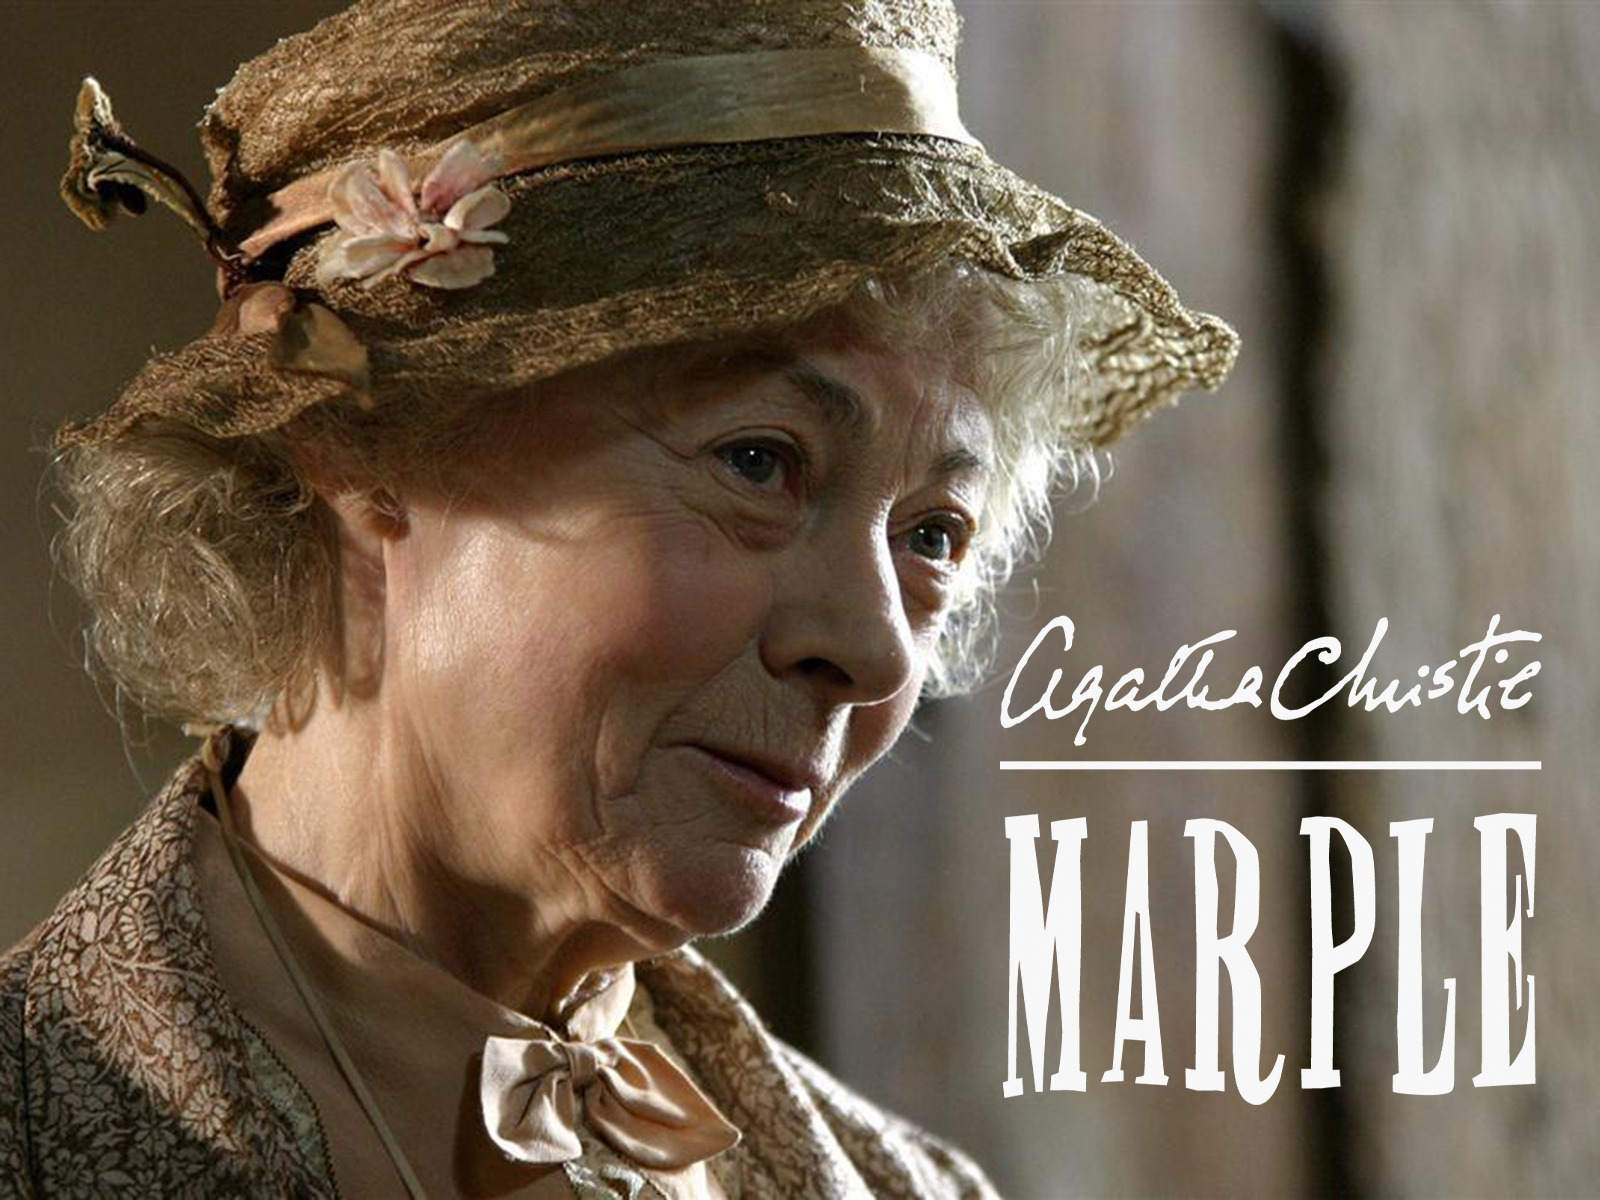 Prime Video: Agatha Christie's Marple